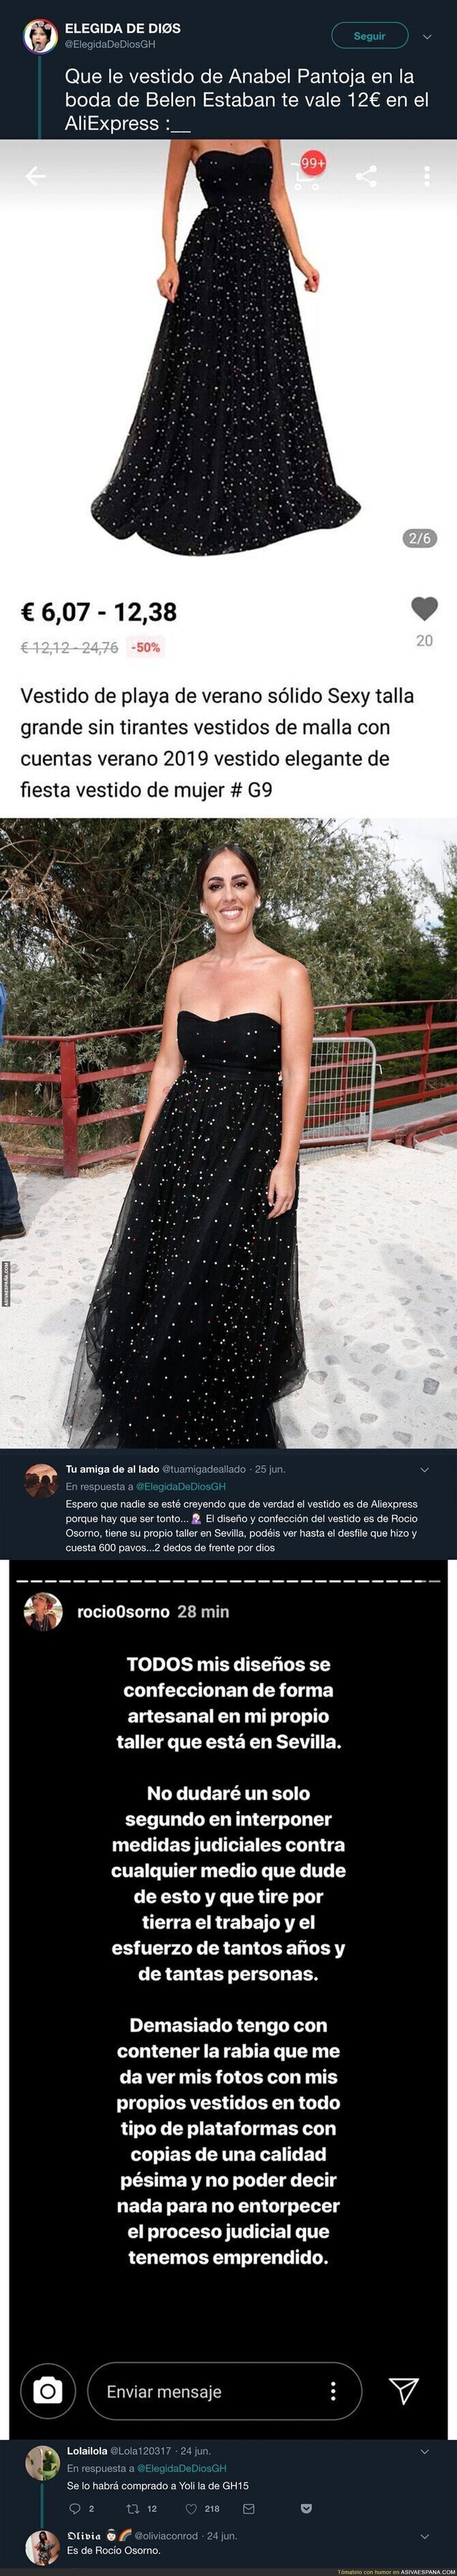 El precio del vestido de Anabel Pantoja en la boda de Belén Esteban